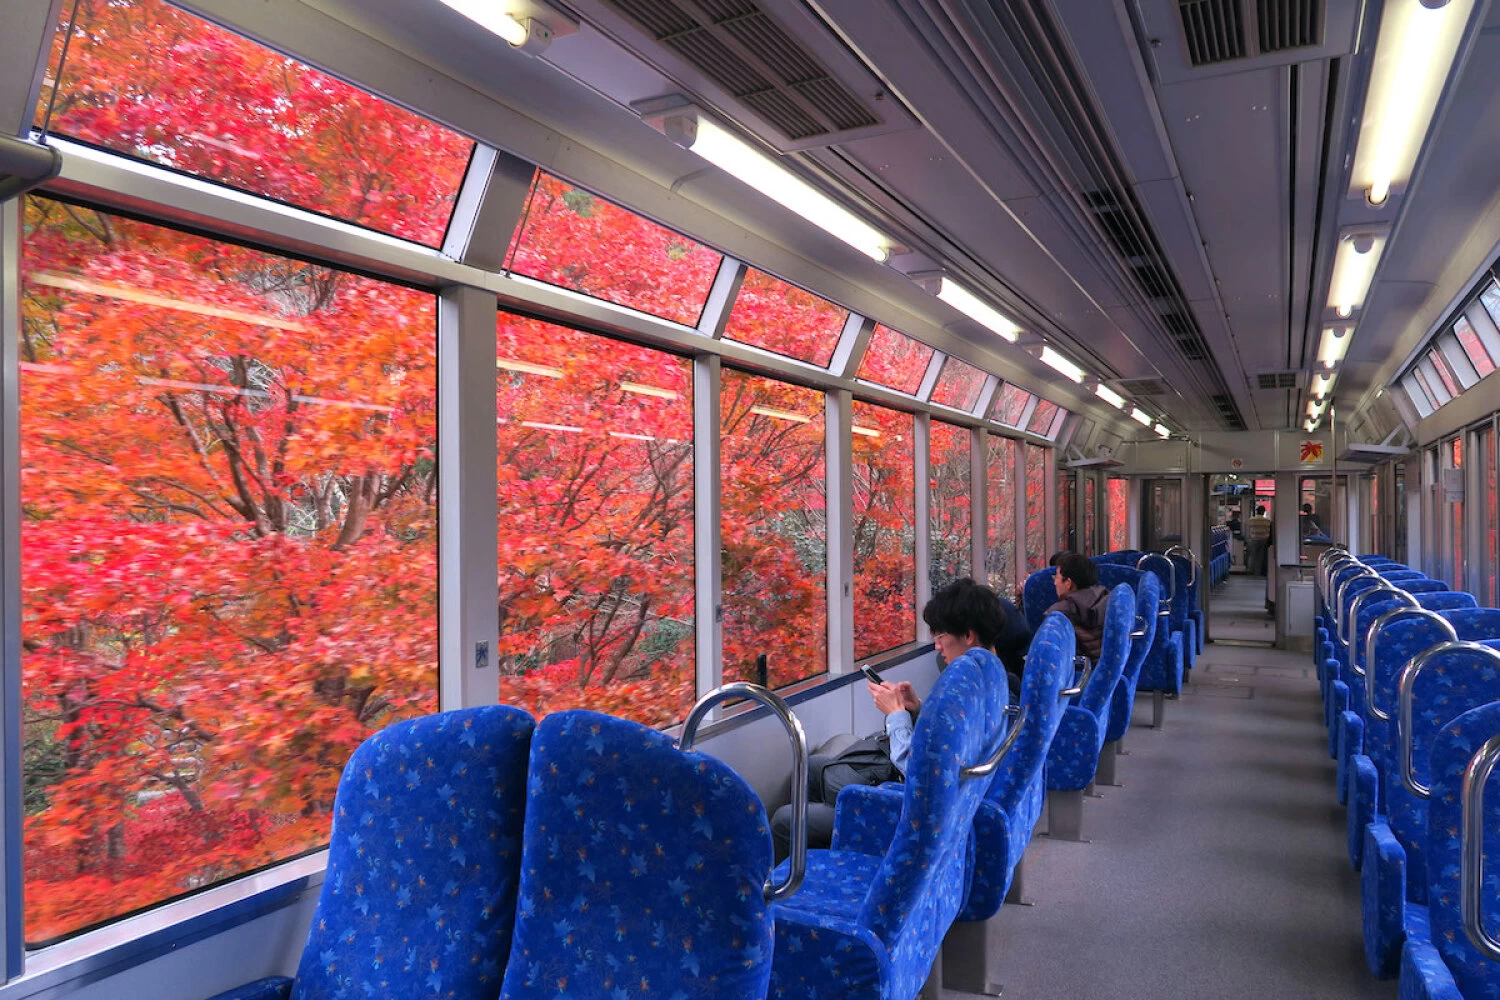  「展望列車きらら」の窓向き座席